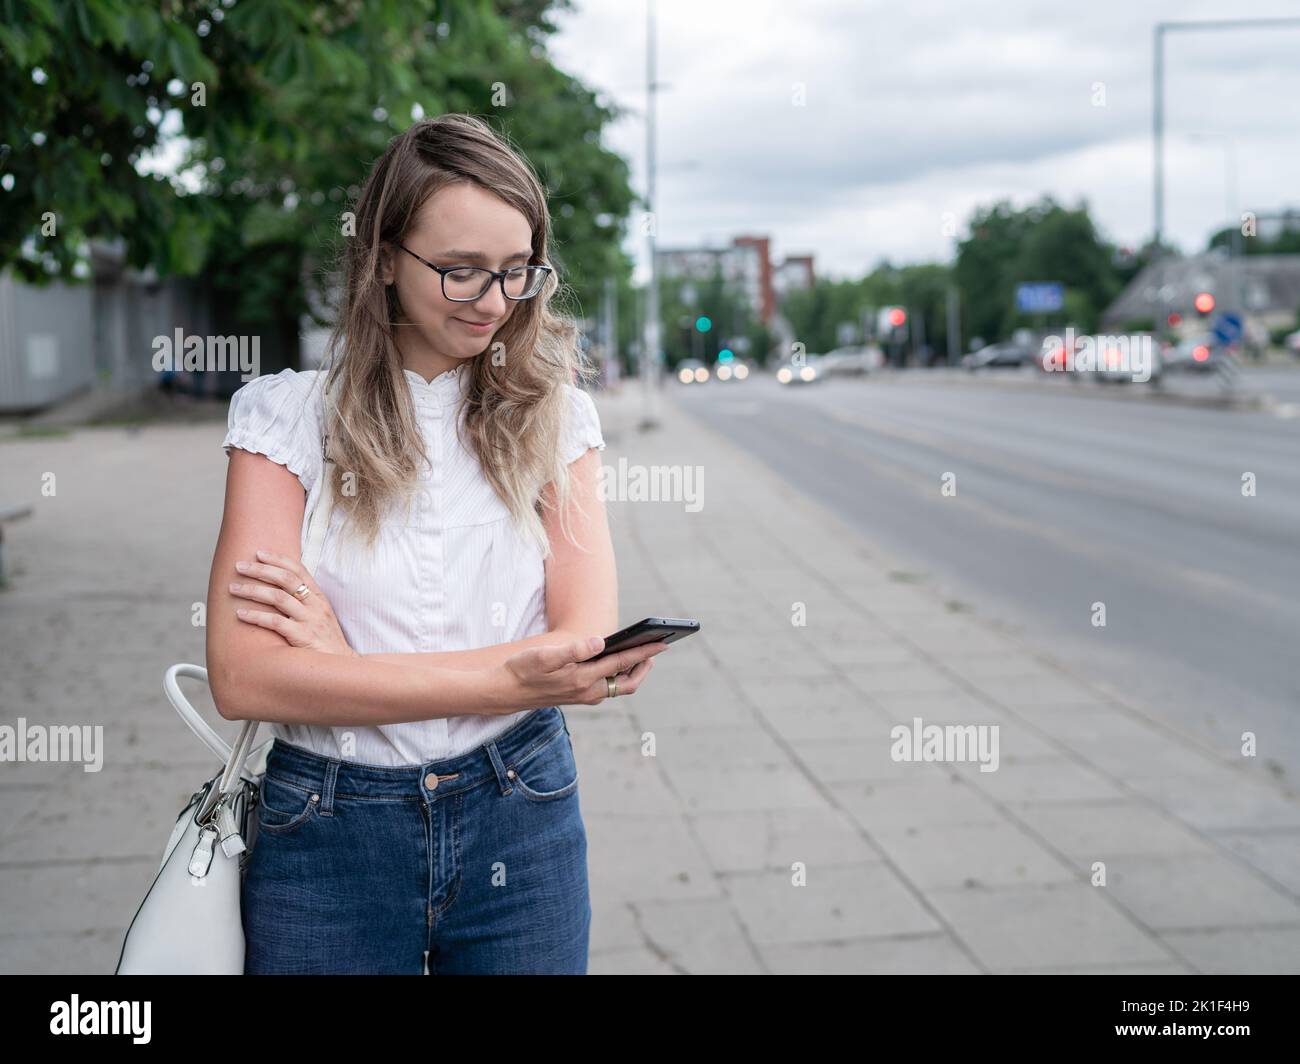 Schöne junge weiße kaukasische Mädchen steht auf dem Bürgersteig und wartet auf die öffentlichen Verkehrsmittel. Langes Blondie-Haar. Fahrzeuge im Hintergrund Stockfoto